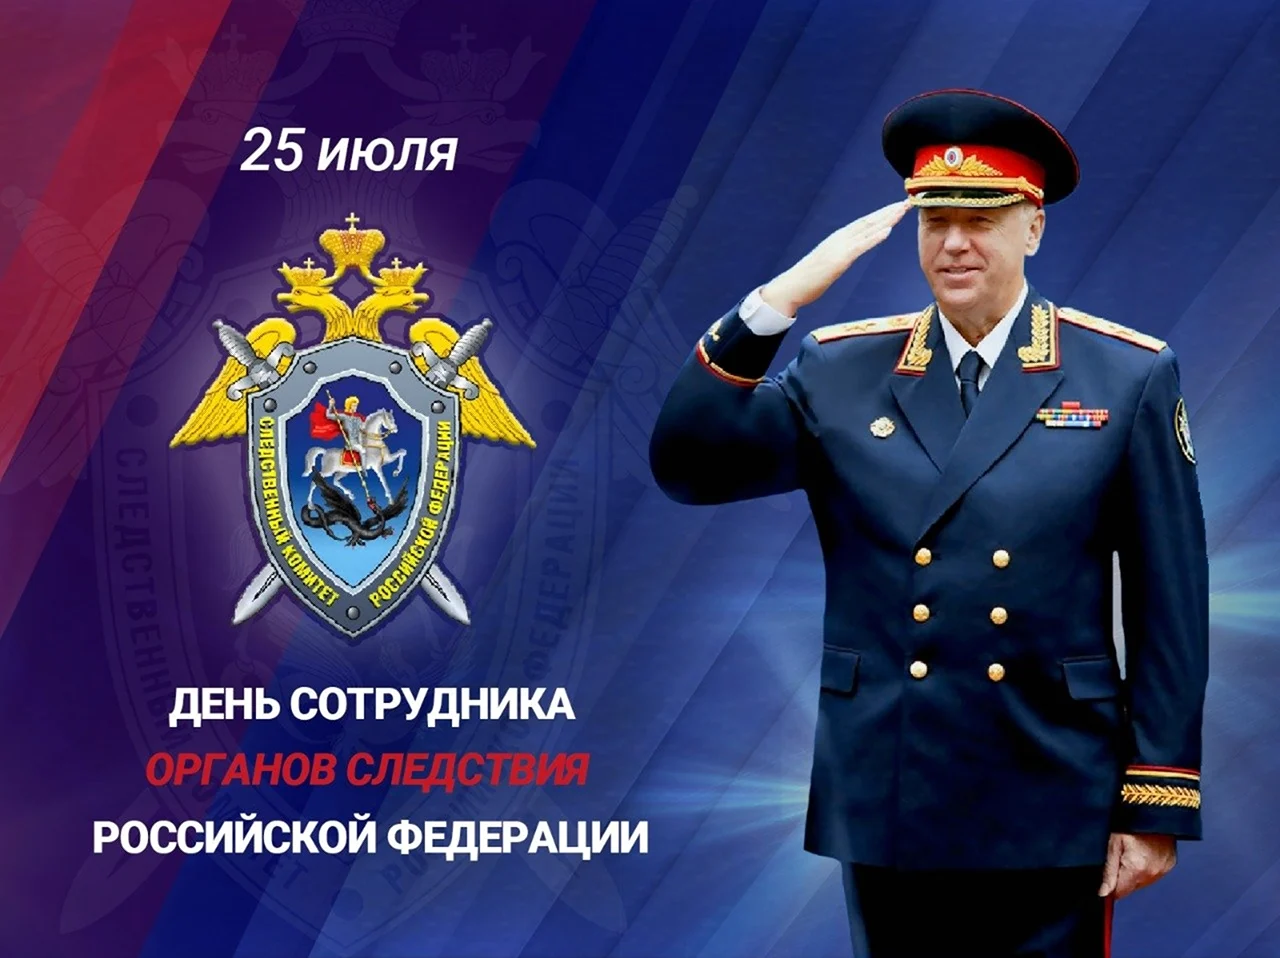 День сотрудника органов следствия Российской Федерации. Поздравление